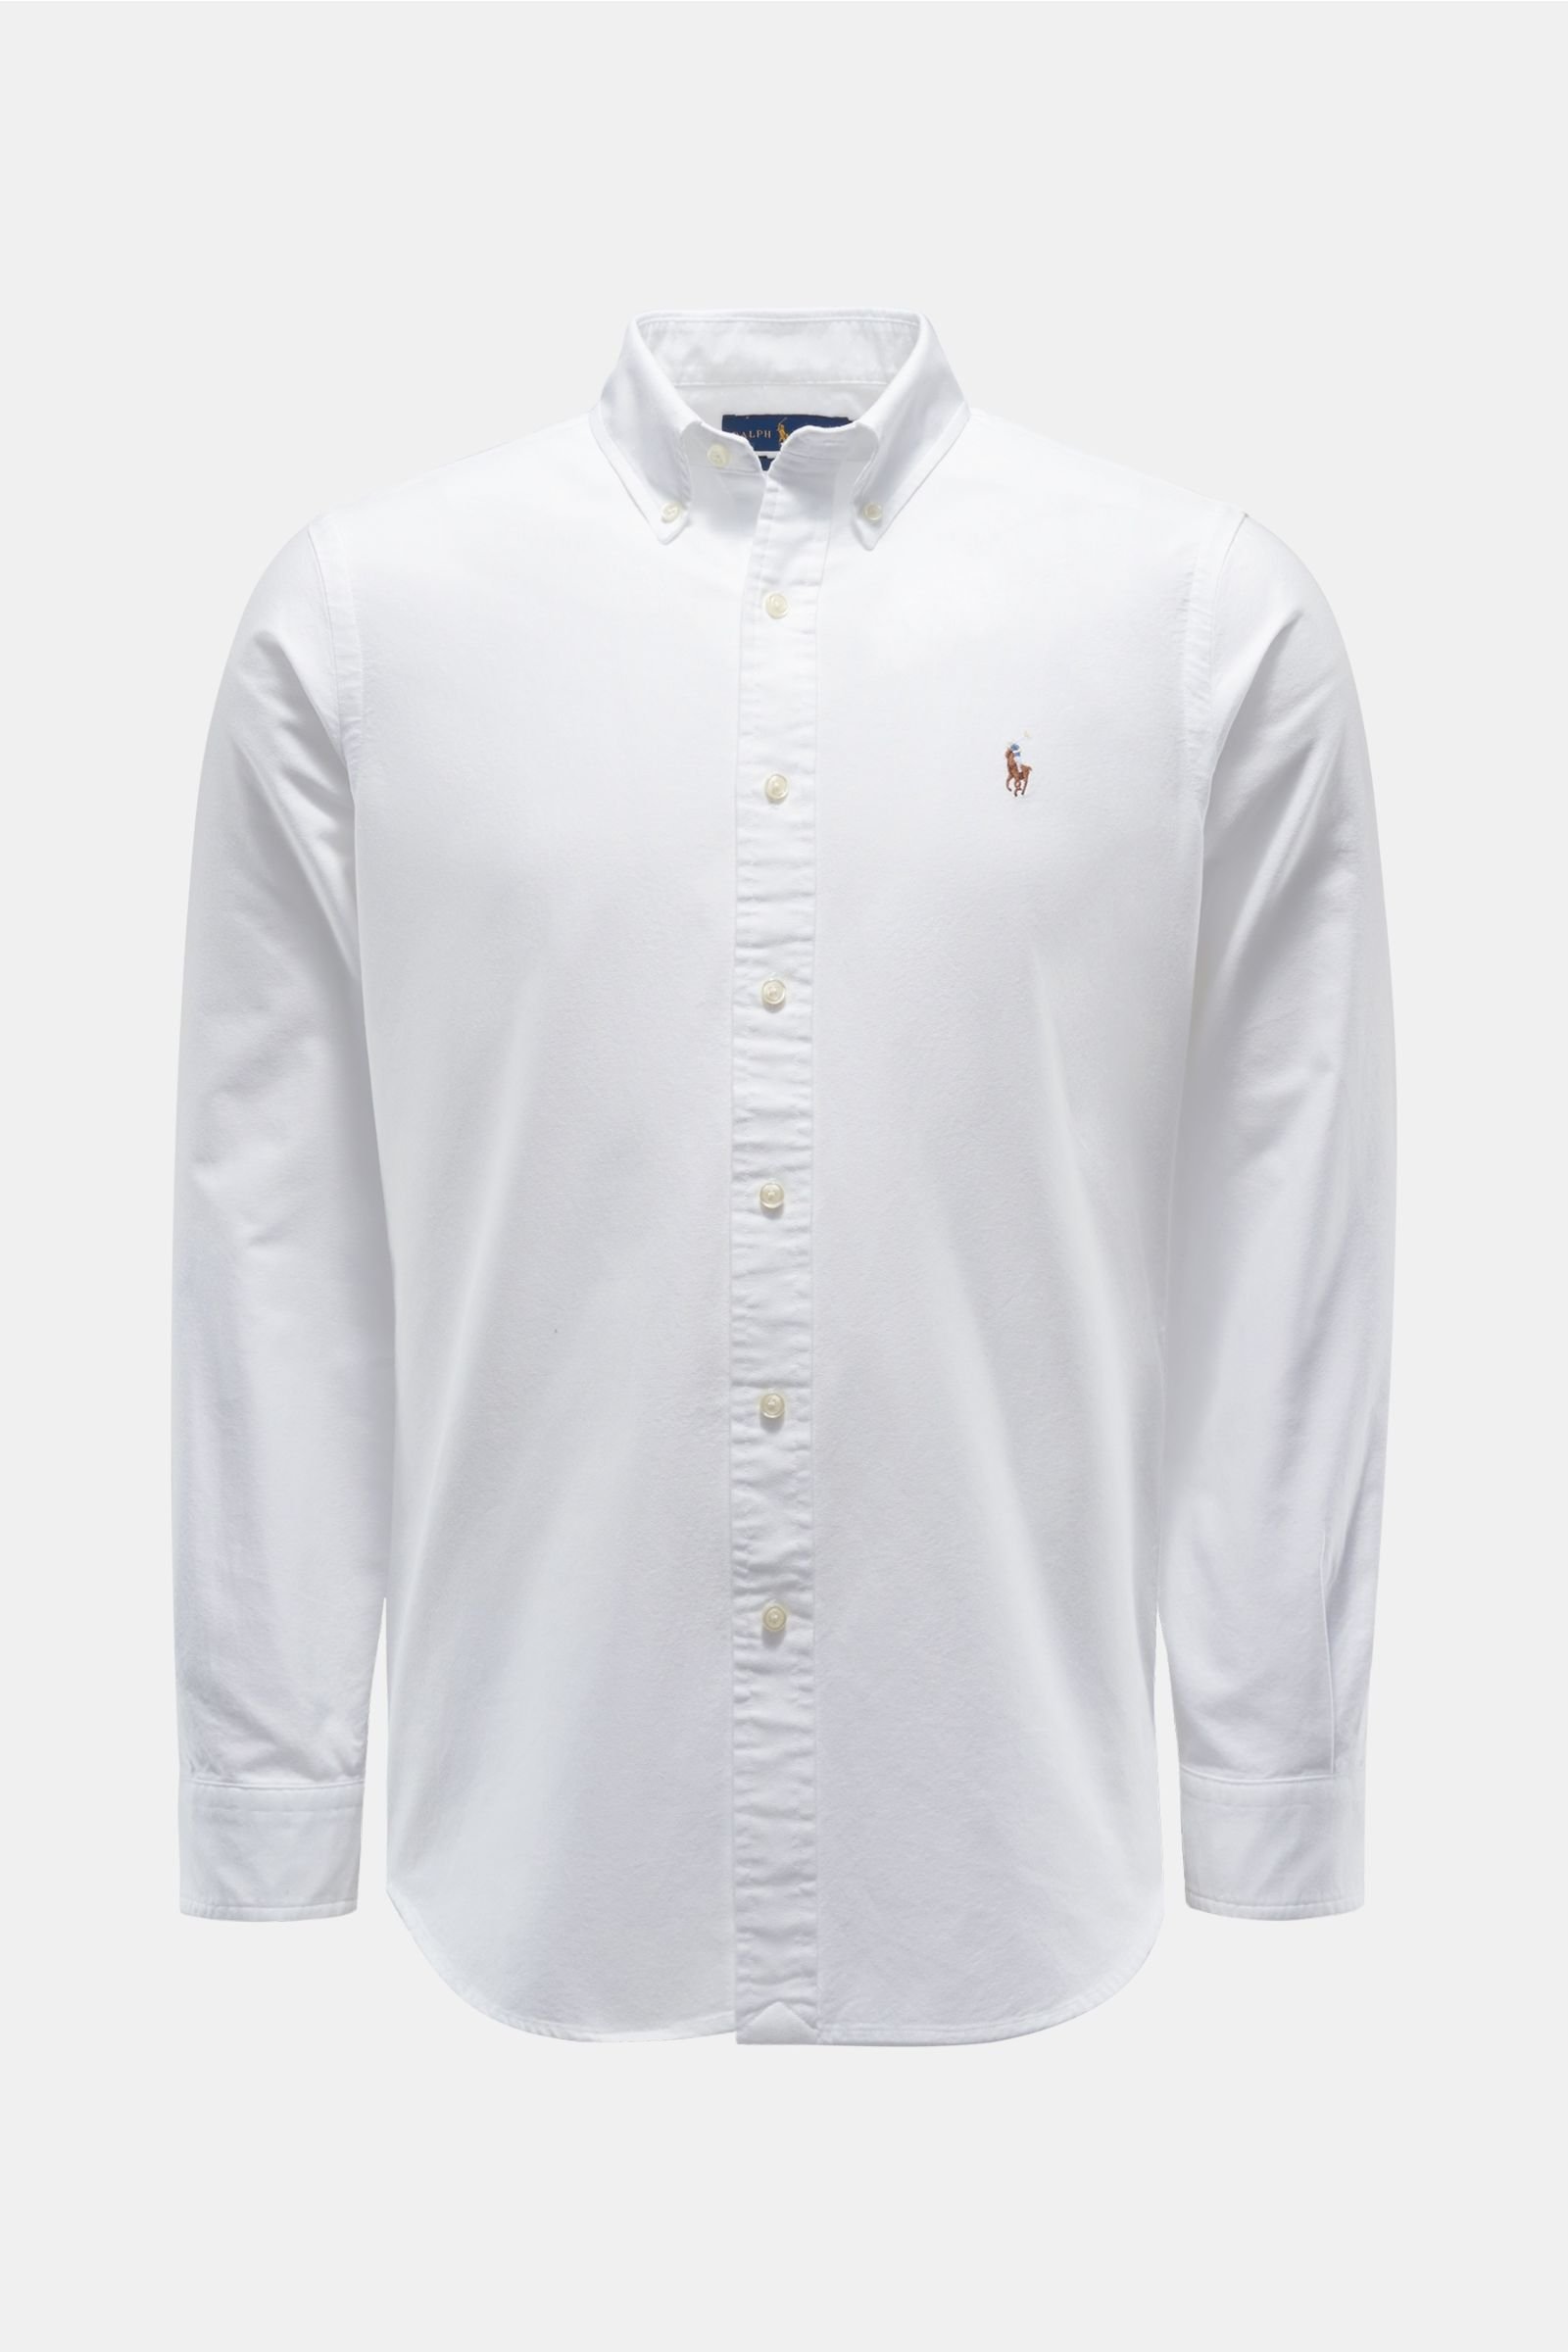 Casual shirt button-down collar white